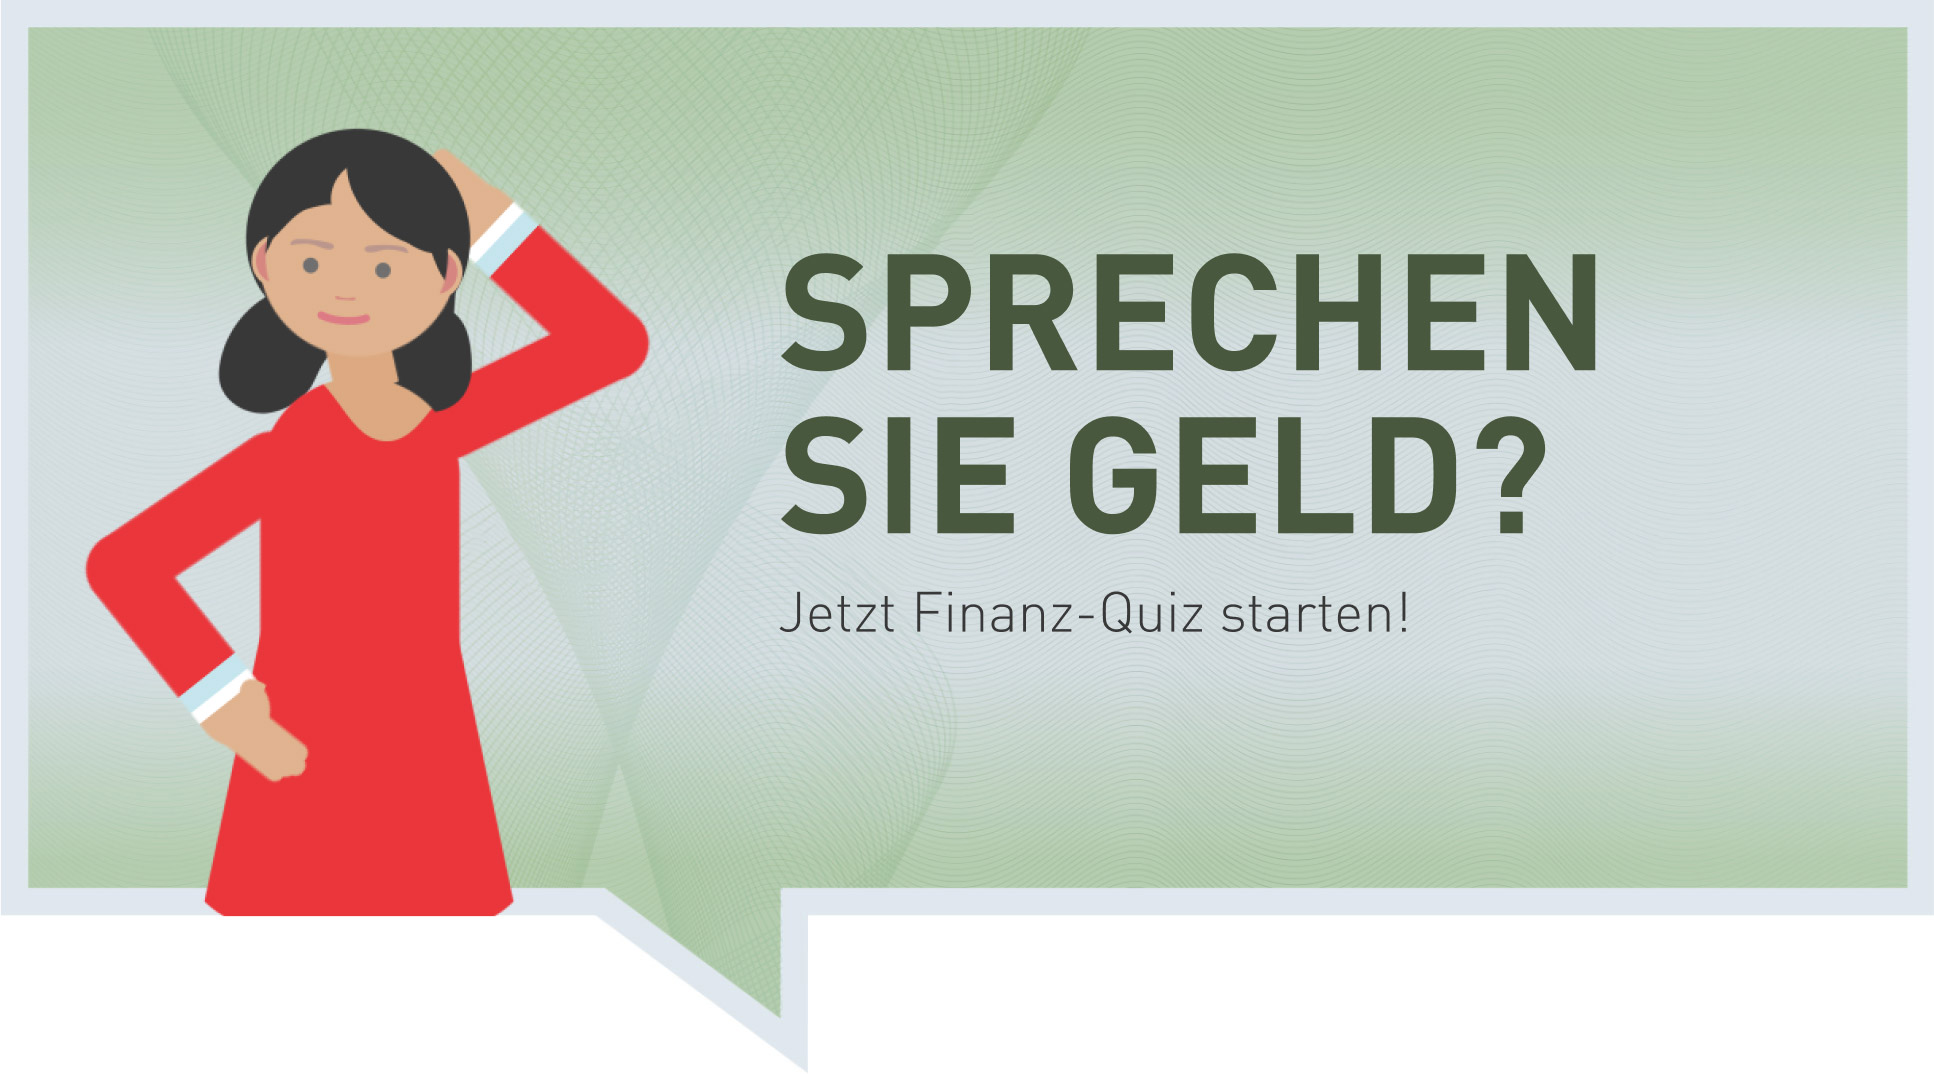 Sprechen Sie Geld? Jetzt Finanz-Quiz starten!